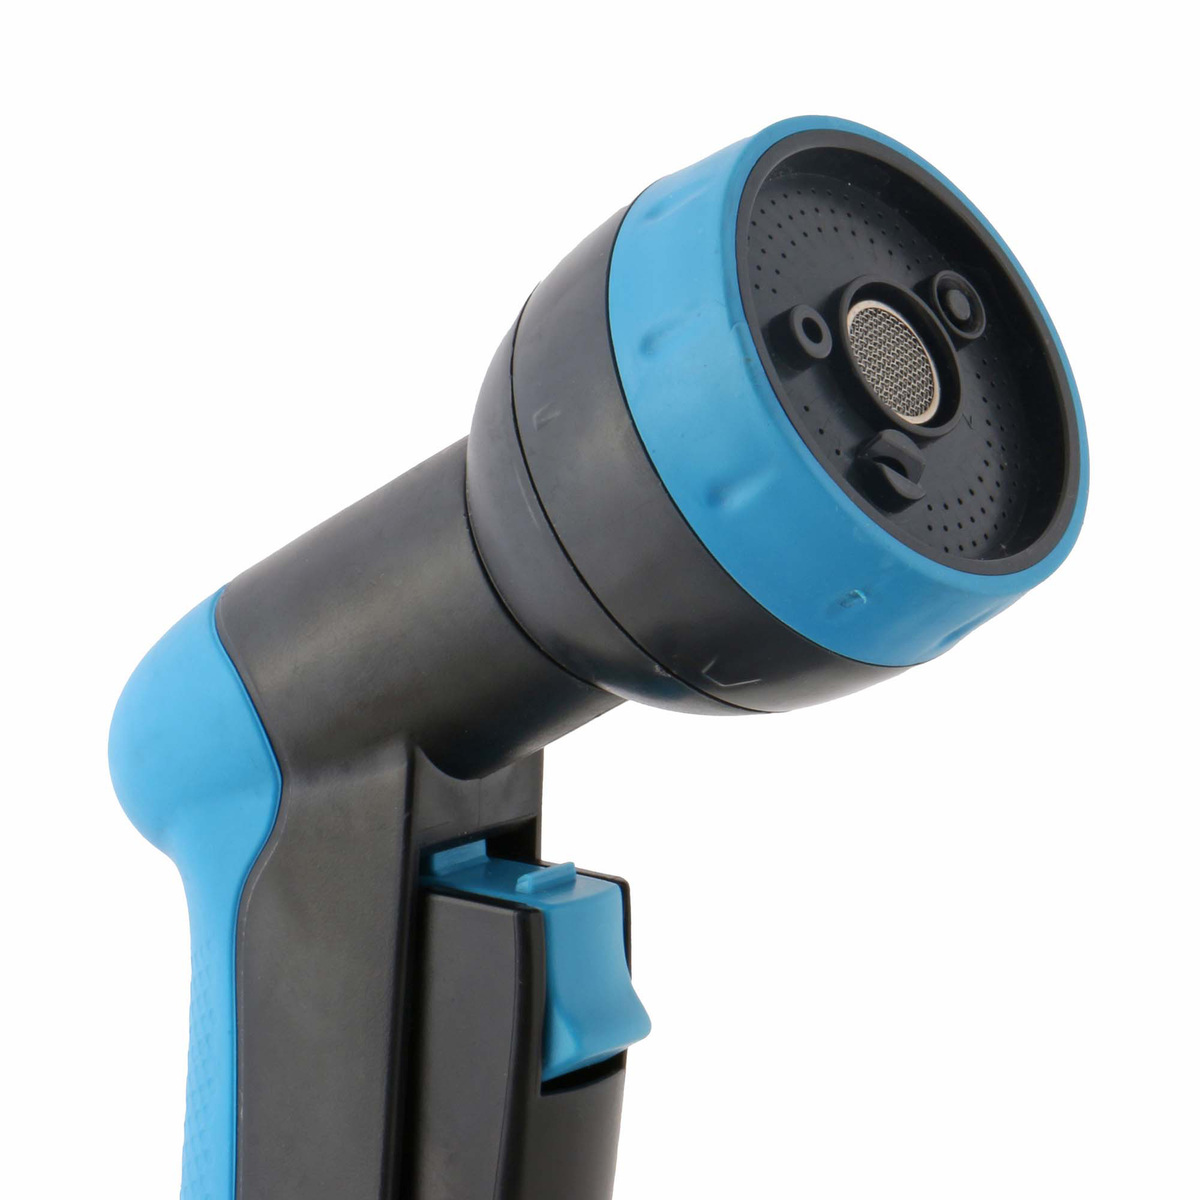 Aqua Craft Pistol Spray, 5 Functions, Blue/Black, 21015